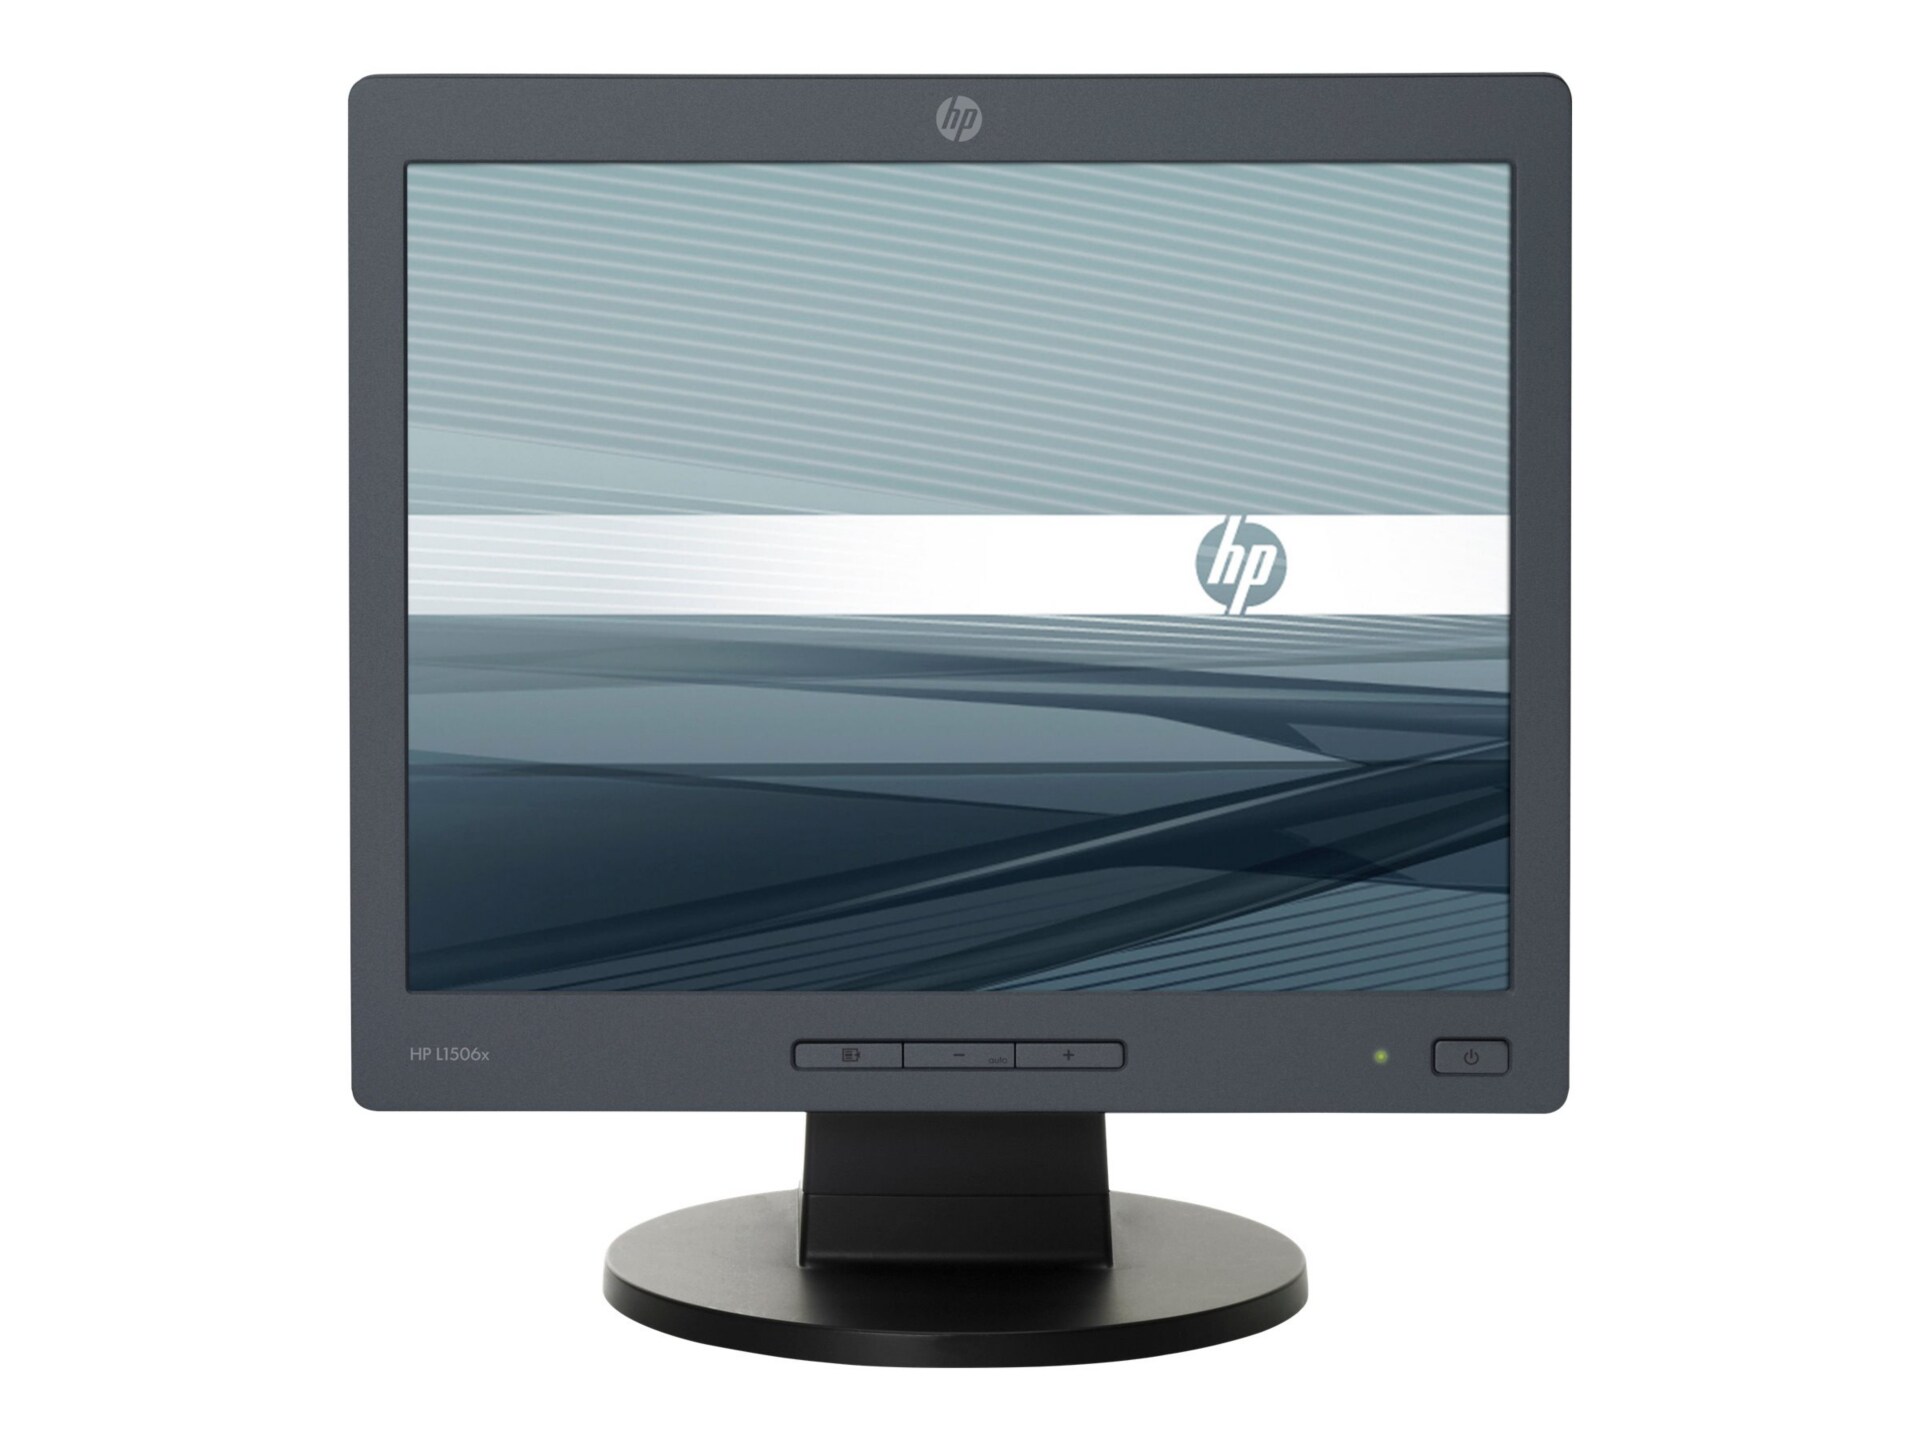 HP L1506x 15" LCD
